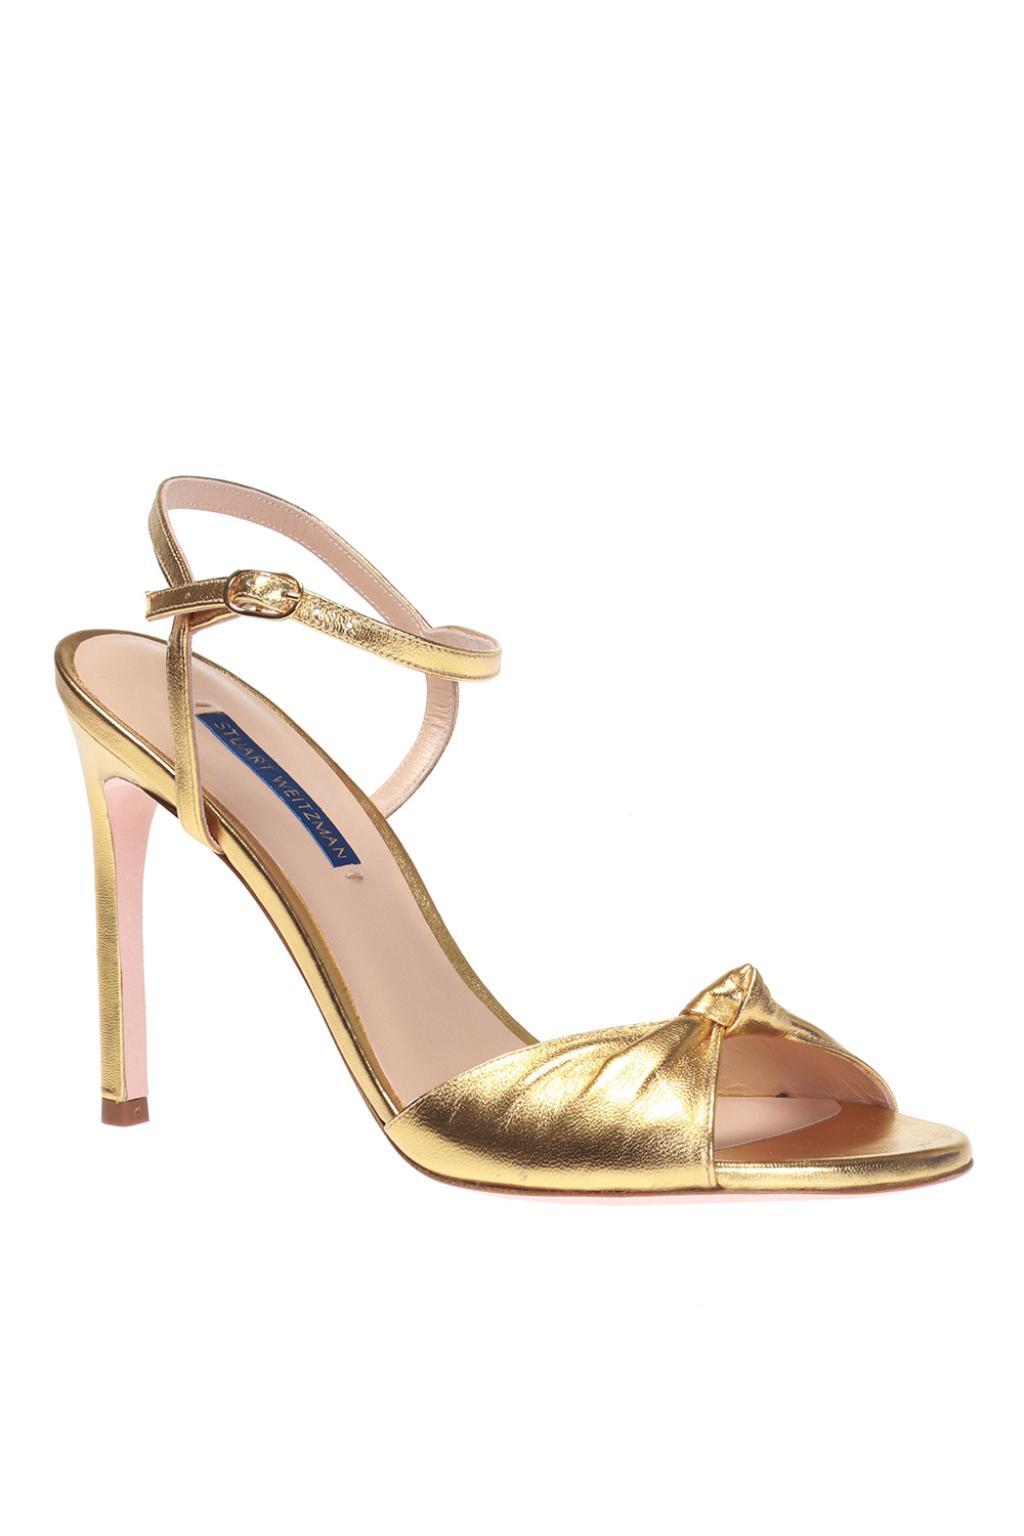 Stuart Weitzman Suede 'gloria' Heeled Sandals in Gold (Metallic) - Lyst